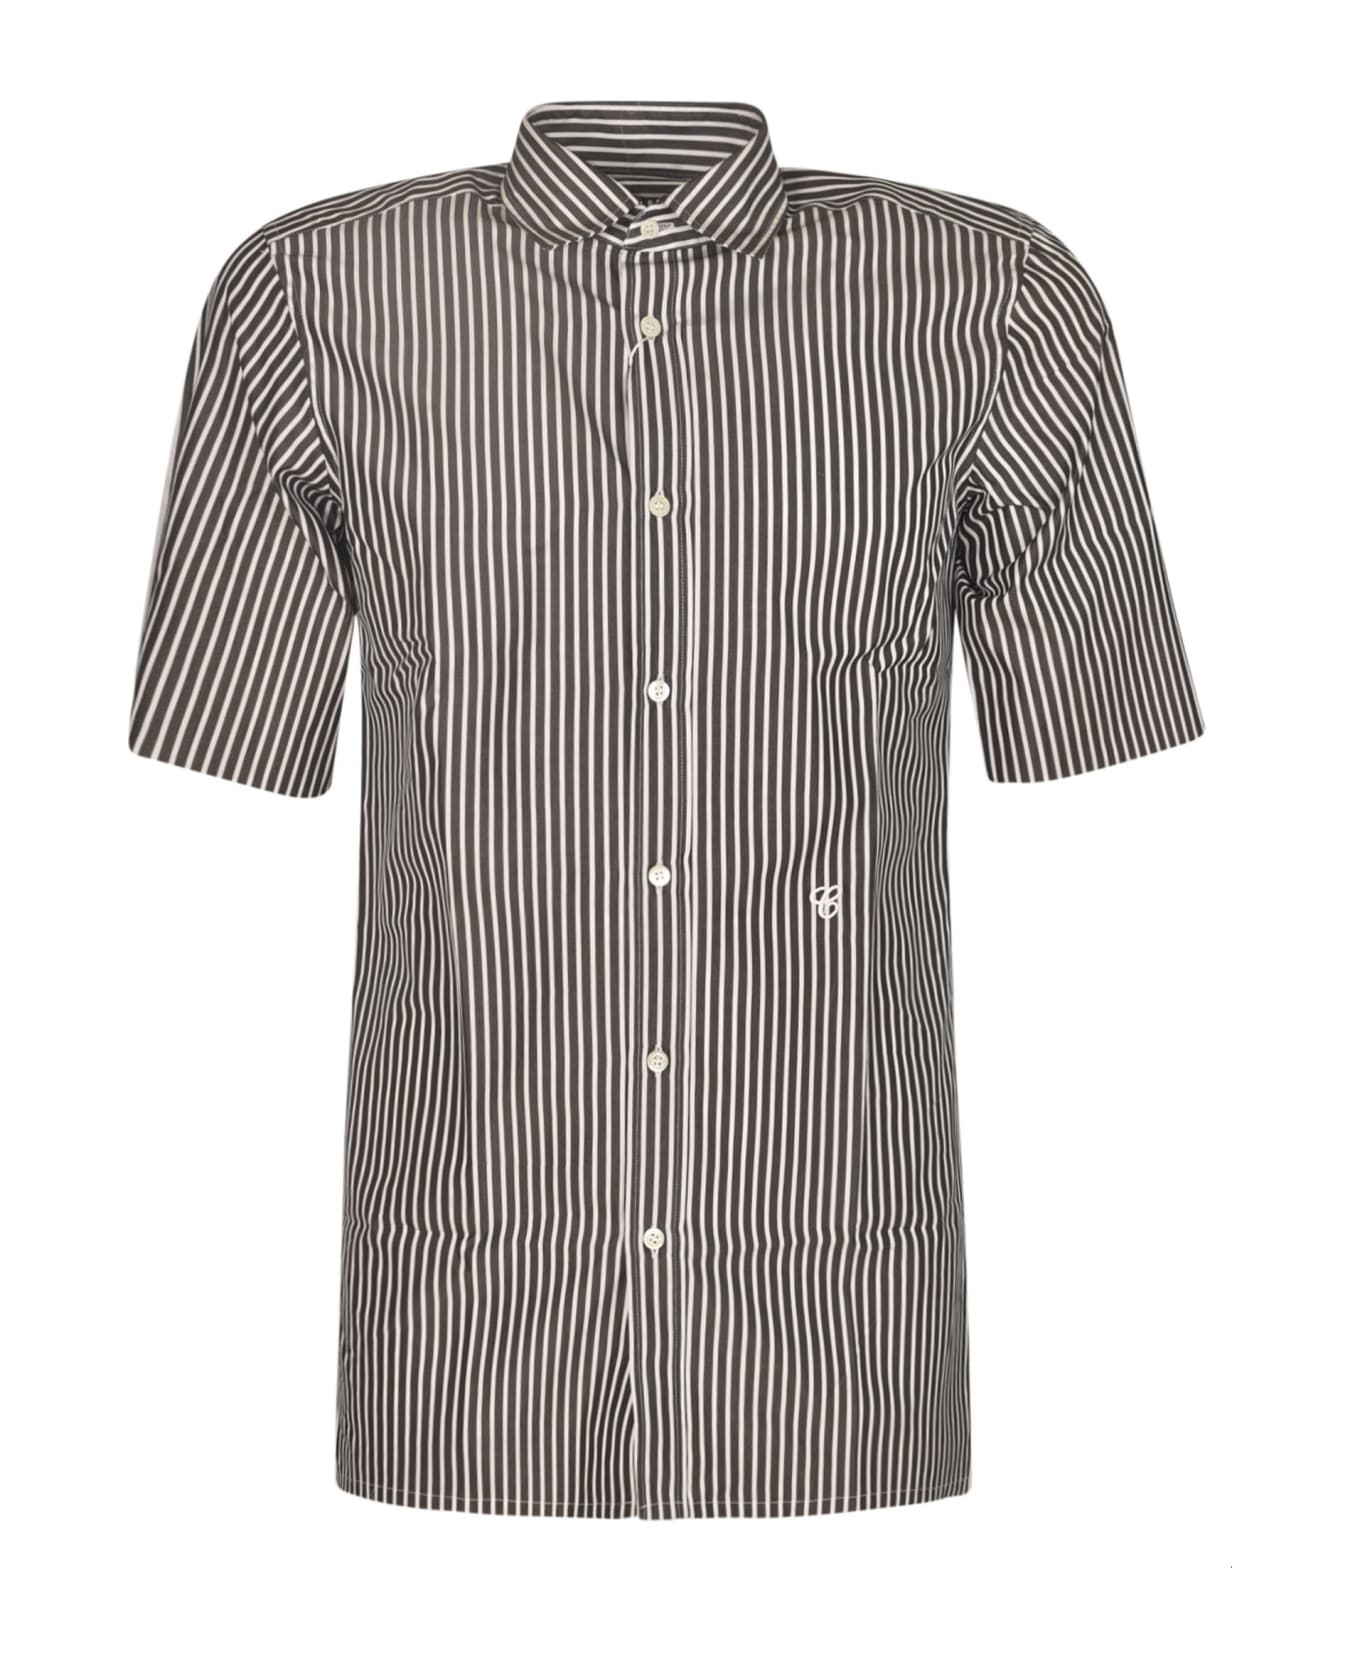 Maison Margiela Short-sleeved Stripe Shirt - Black シャツ